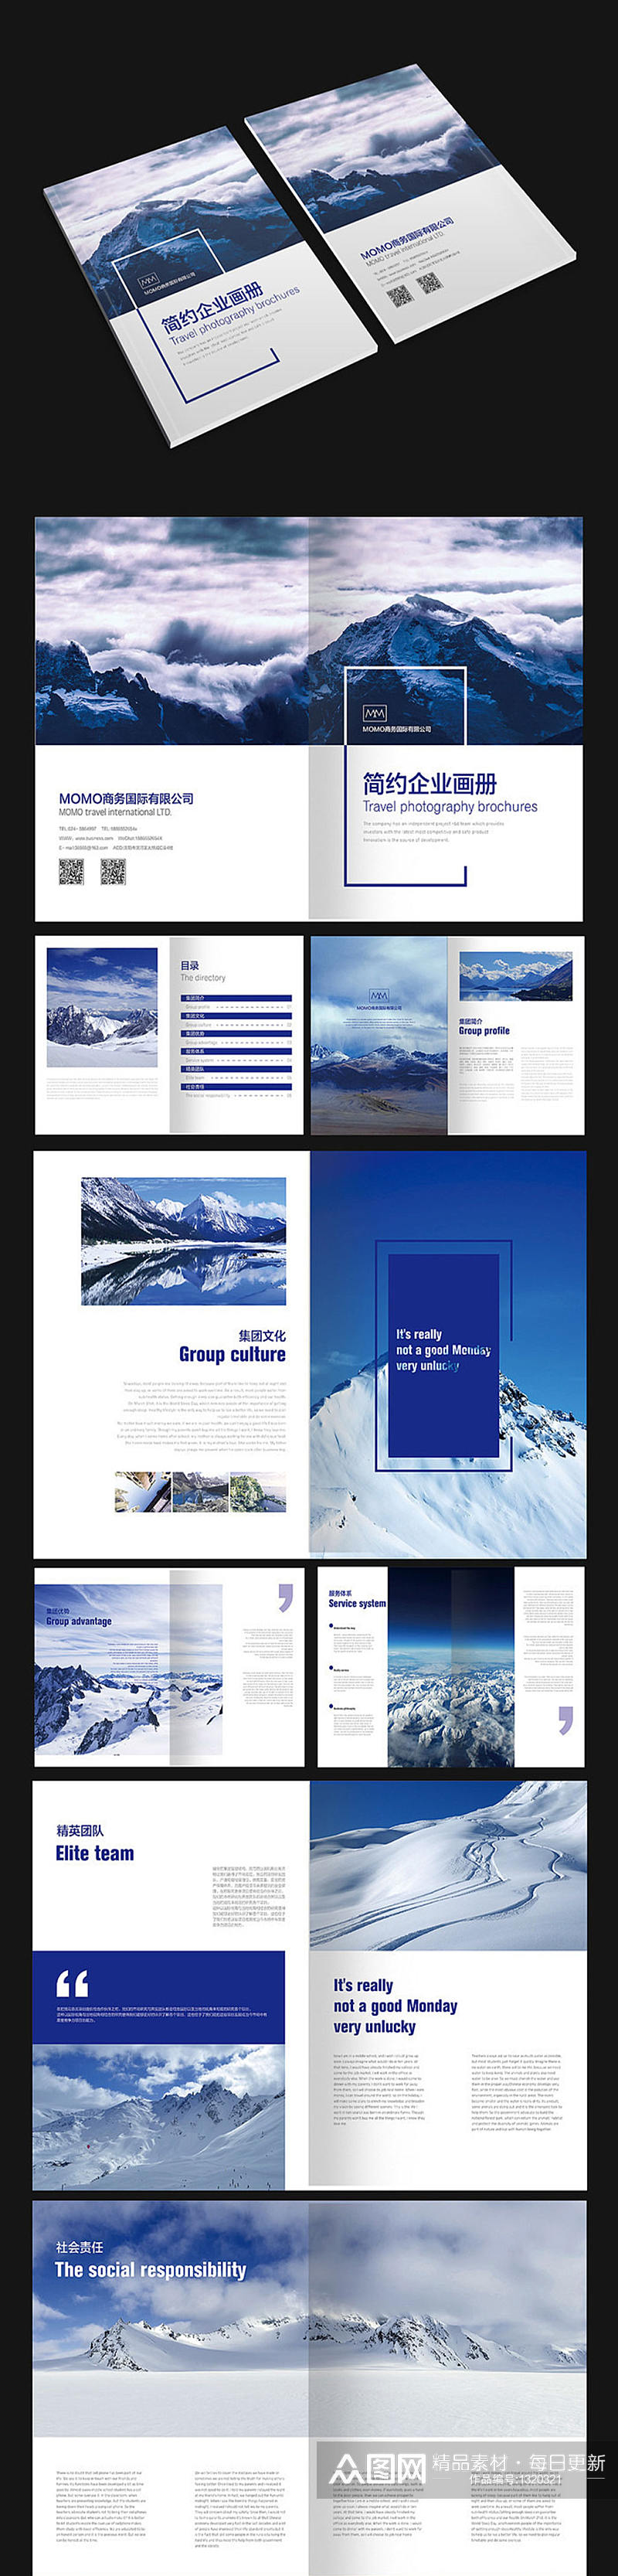 蓝色雪山商务画册素材